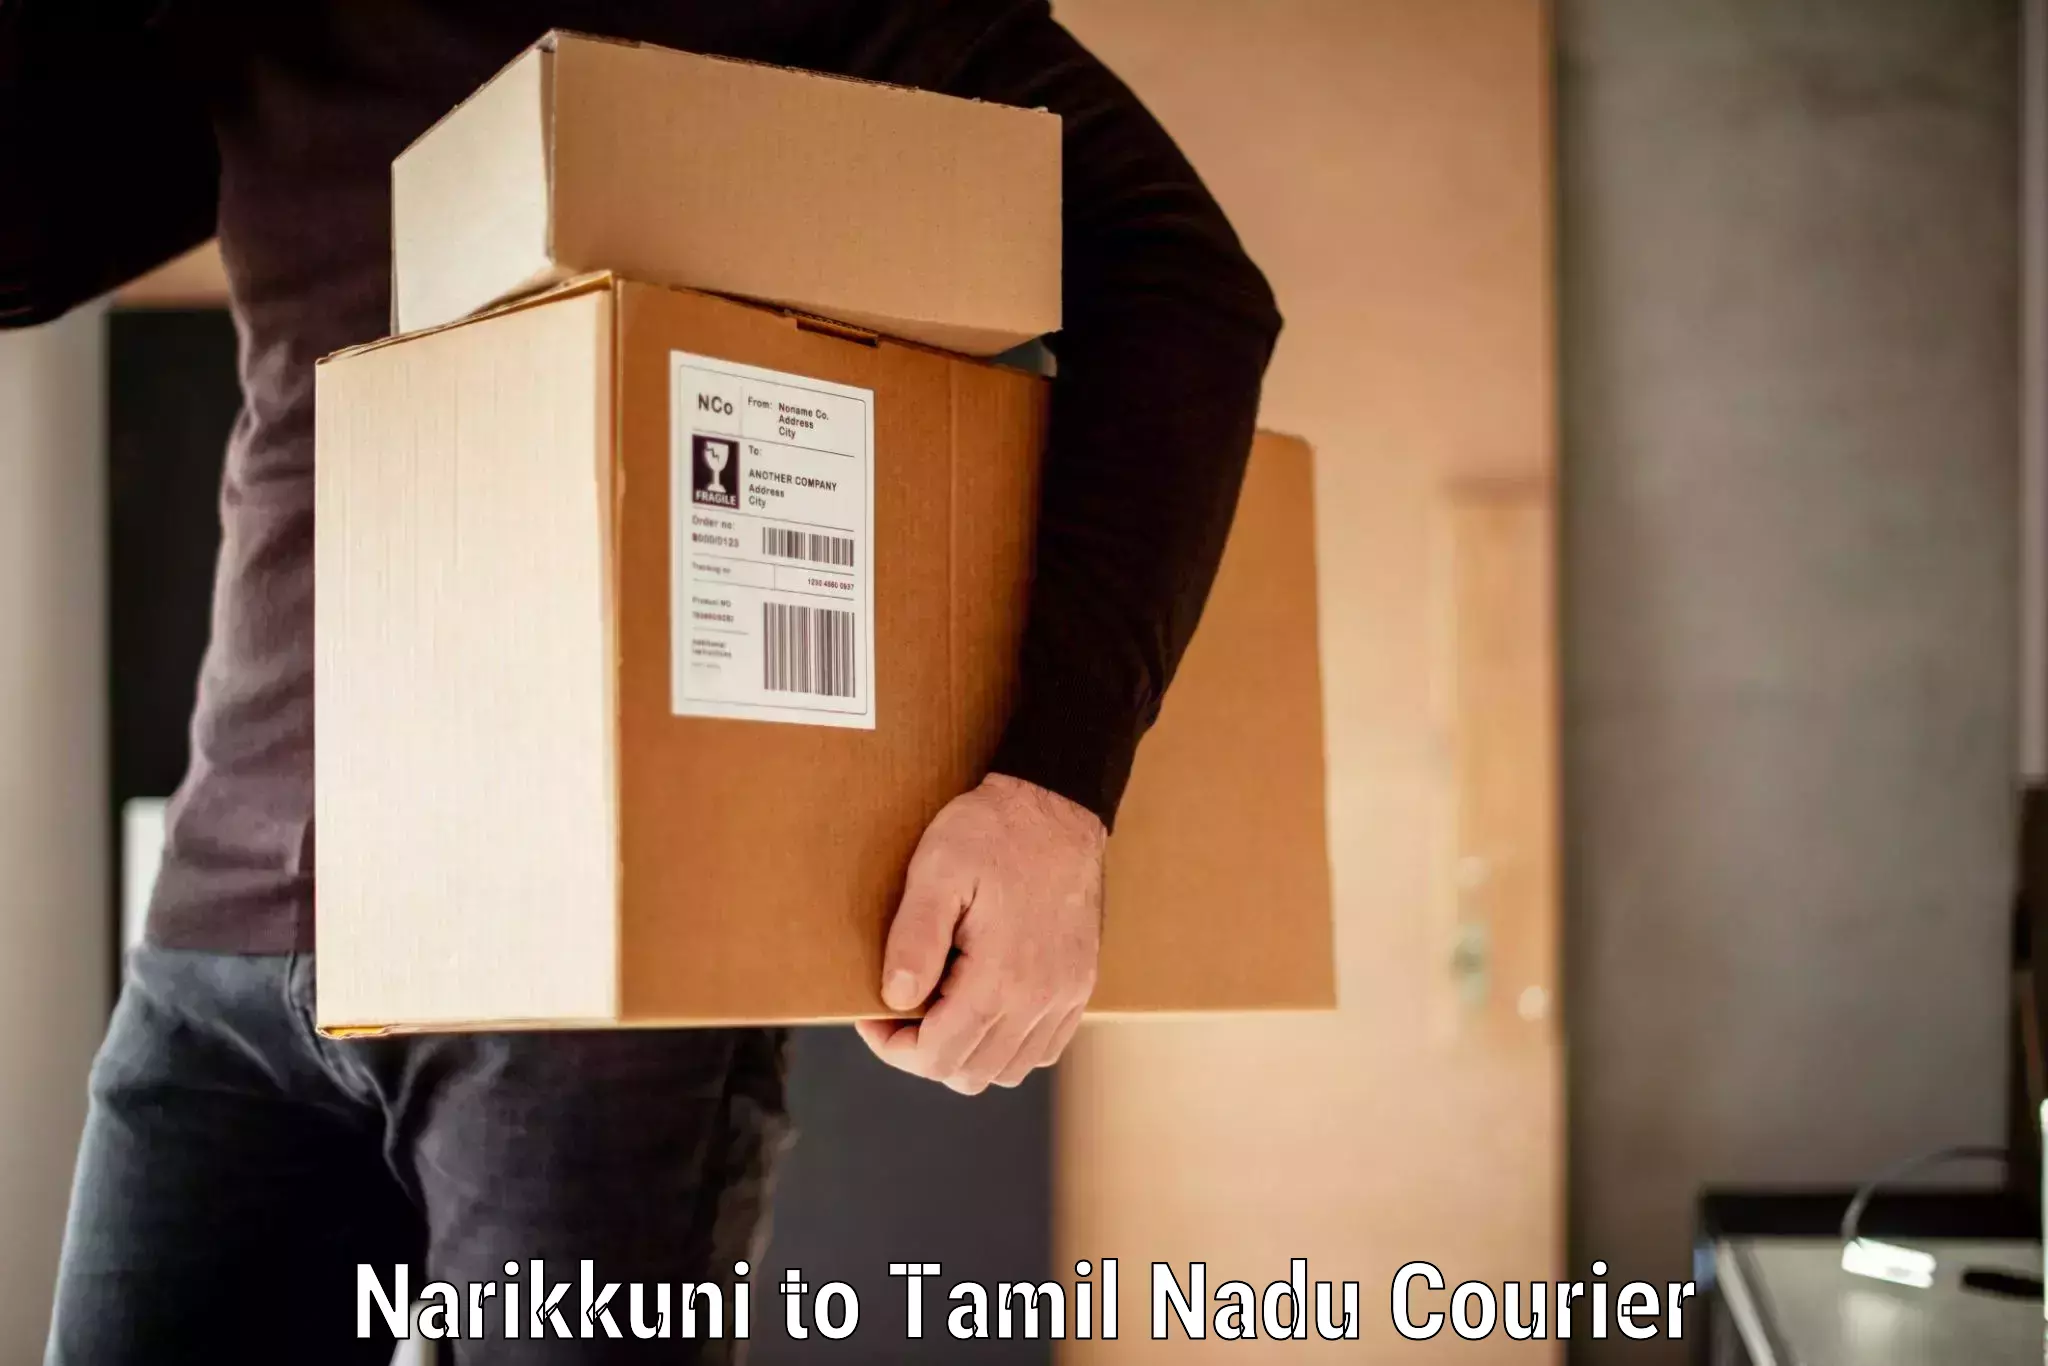 Urgent luggage shipment Narikkuni to Kagithapuram